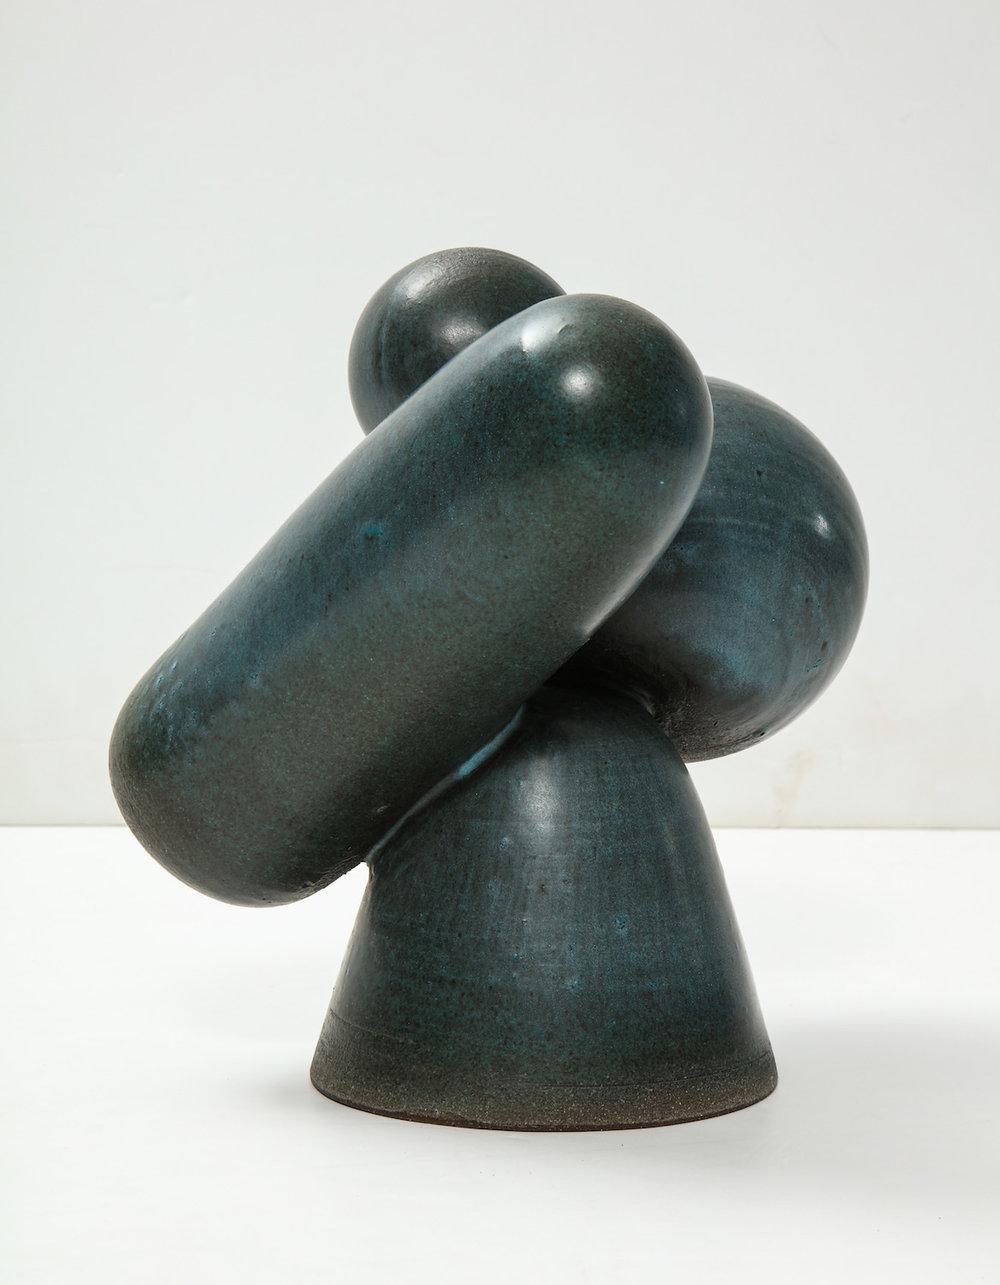 4-Piece Assemblage Sculpture #2 by David Haskell (amerikanisch)